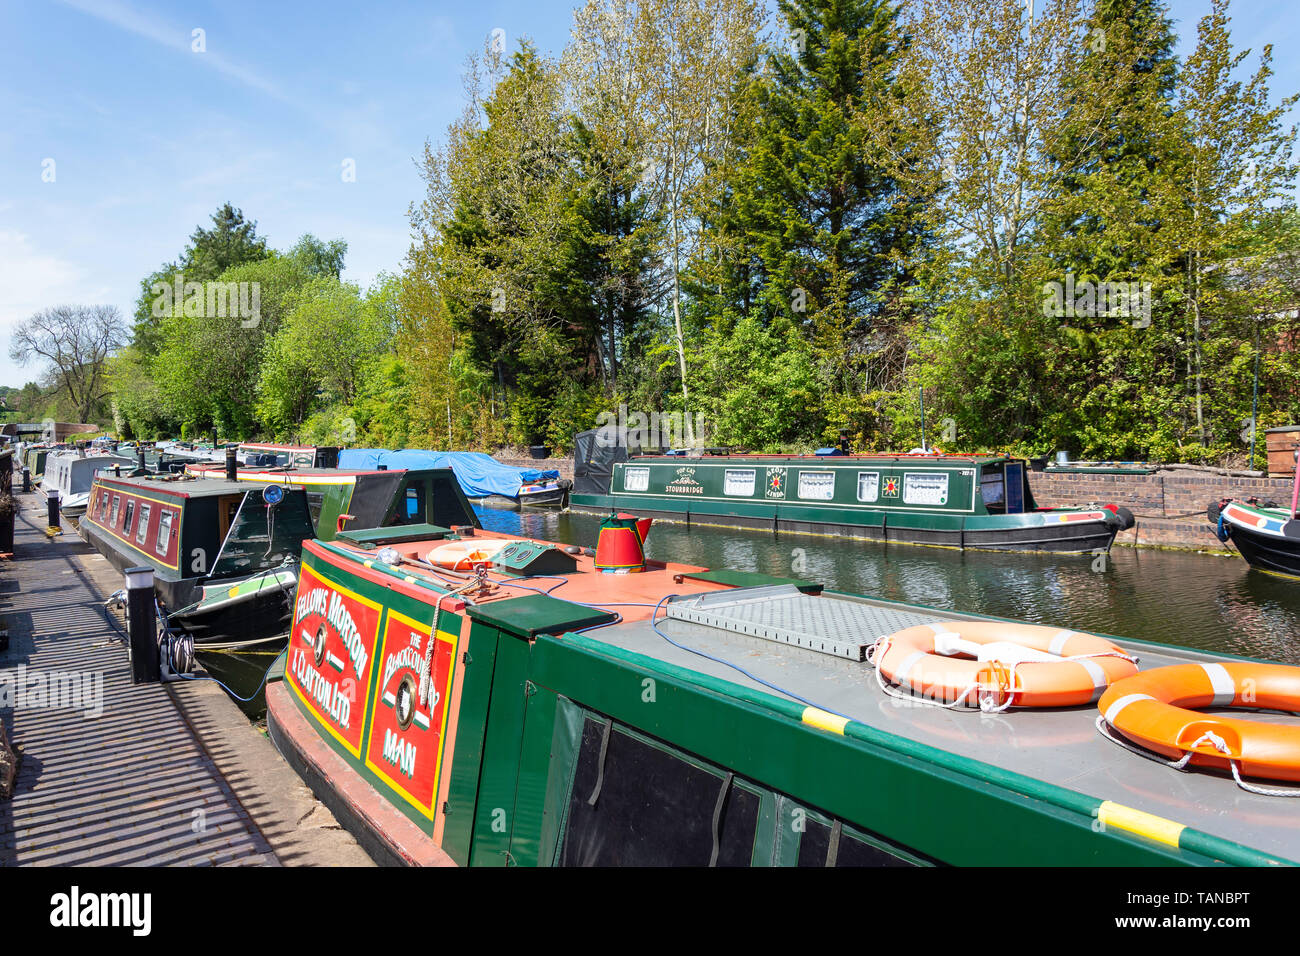 Canal boats moored on Stourbridge Canal, Stourbridge, West Midlands, England, United Kingdom Stock Photo